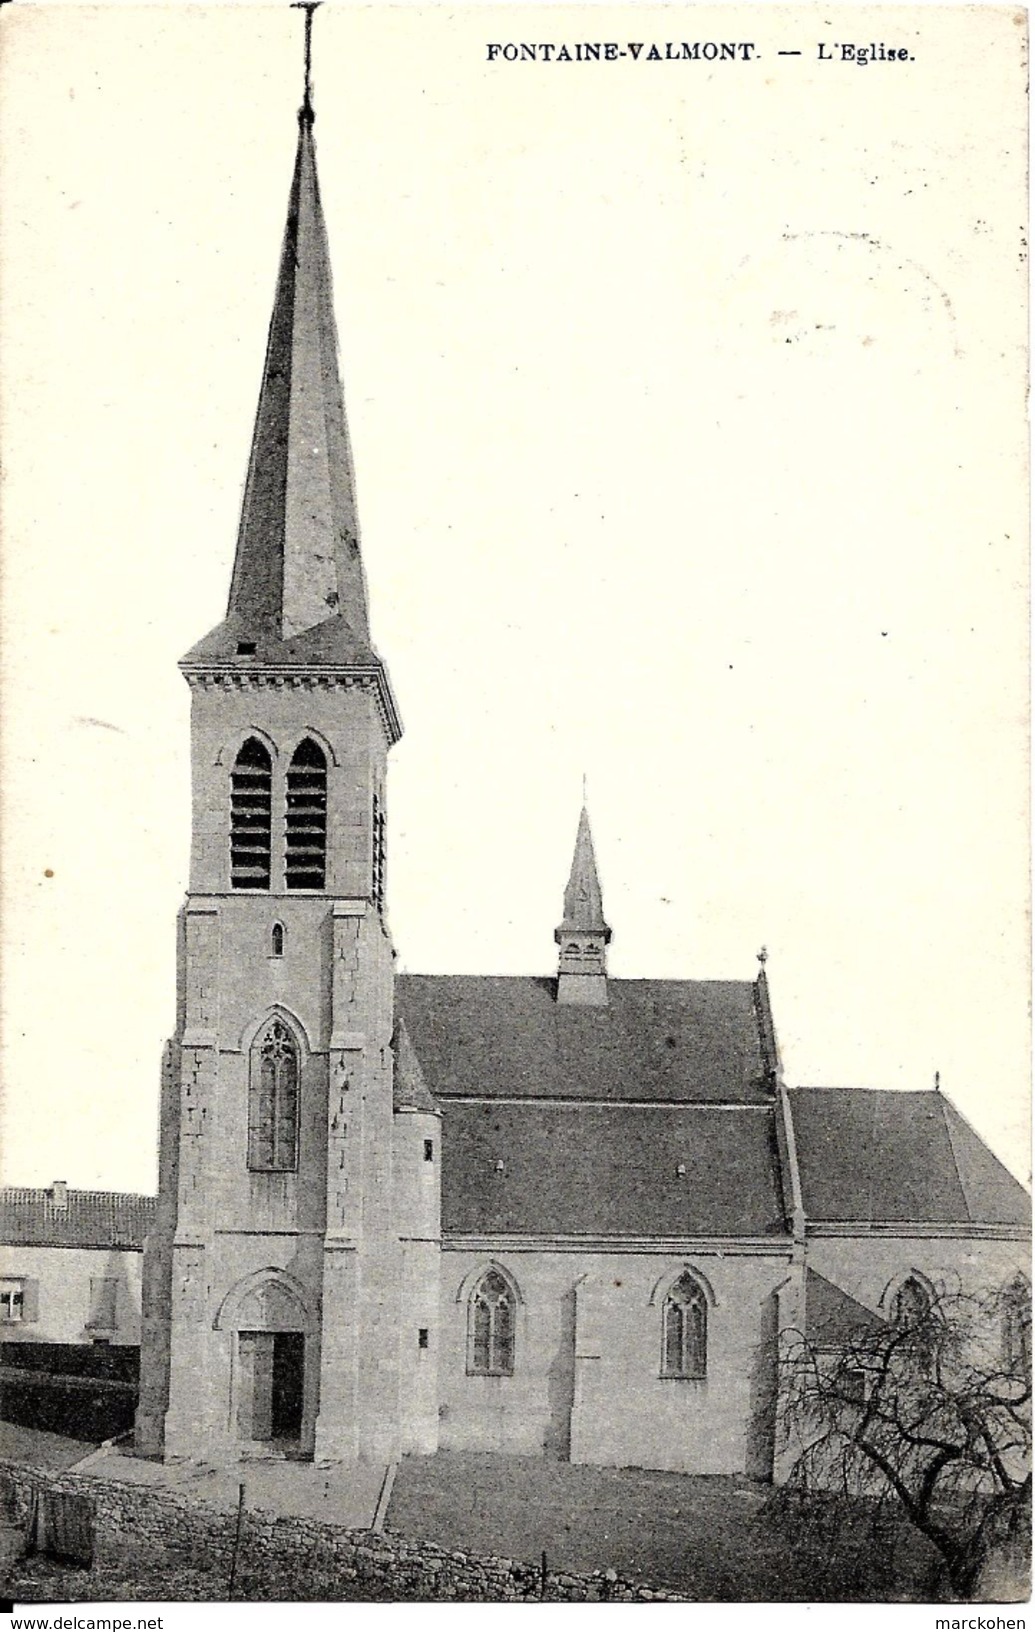 MERBES-LE-CHÂTEAU - Fontaine-Valmont (6567) : L'Eglise St-Martin. CPA. - Merbes-le-Château